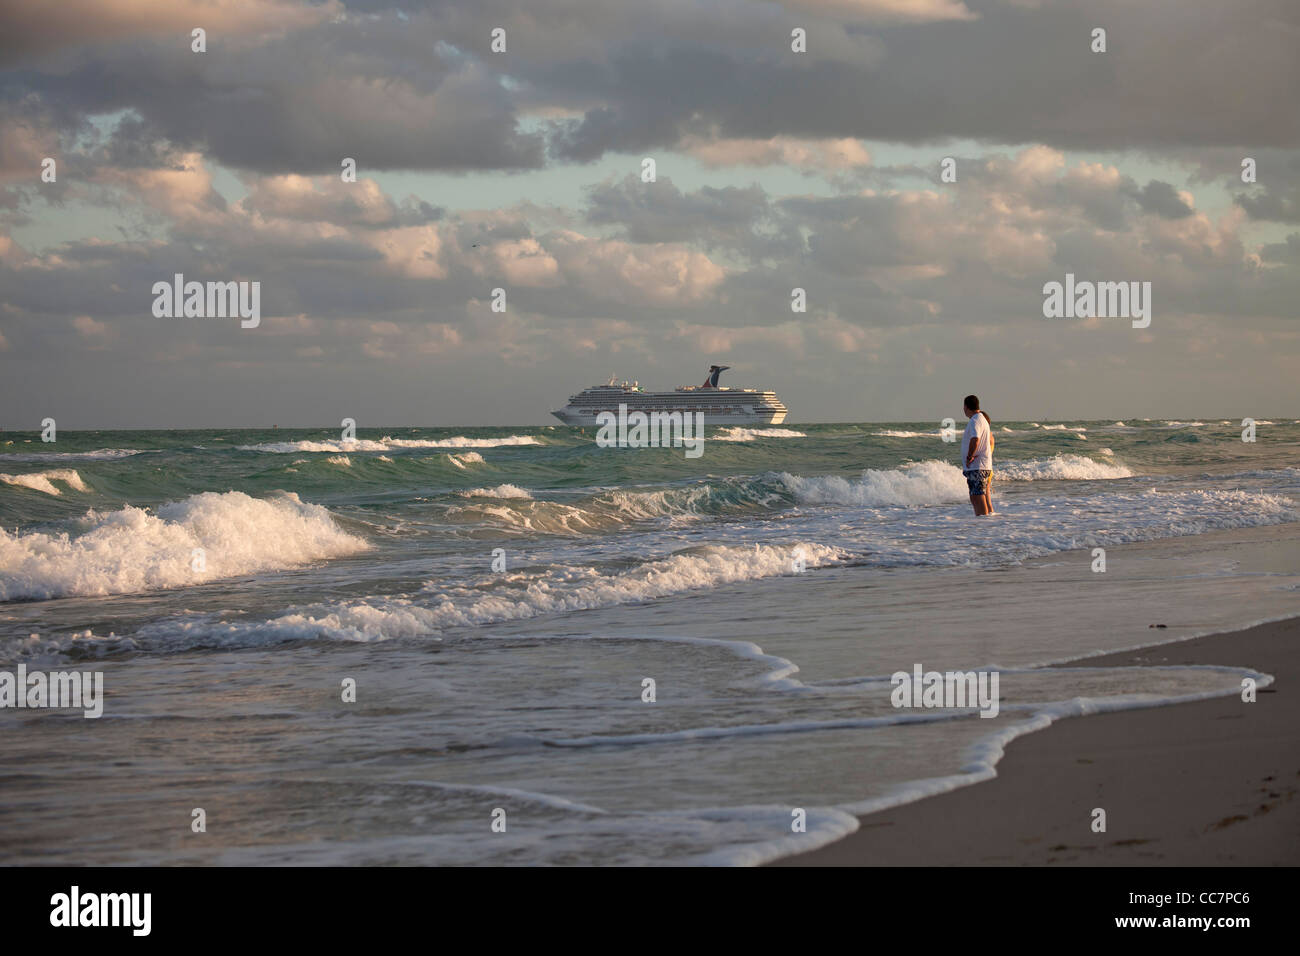 Au départ de bateau de croisière Carnival Liberty et la plage à South Beach, Miami, Floride, USA Banque D'Images